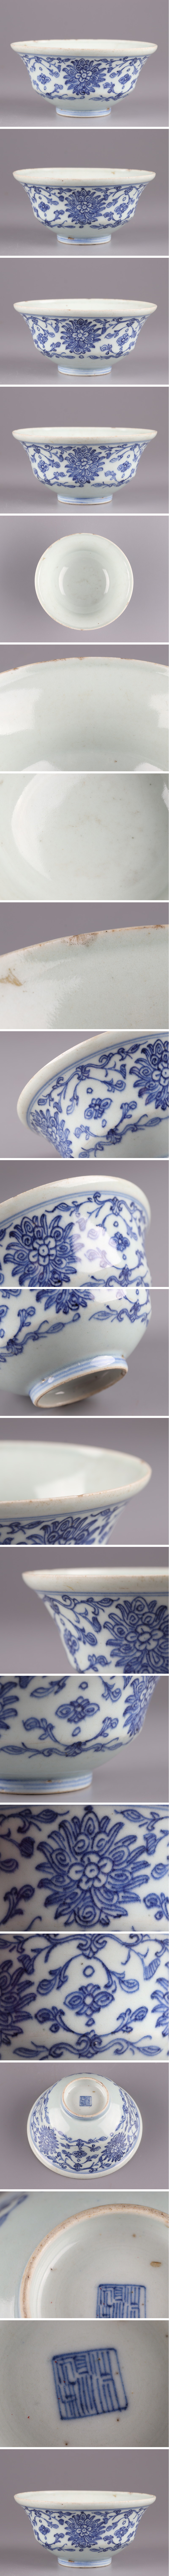 【即納正規品】中国古玩 唐物 染付 青華 在印 茶碗 古作 時代物 極上品 初だし品 3062 染付